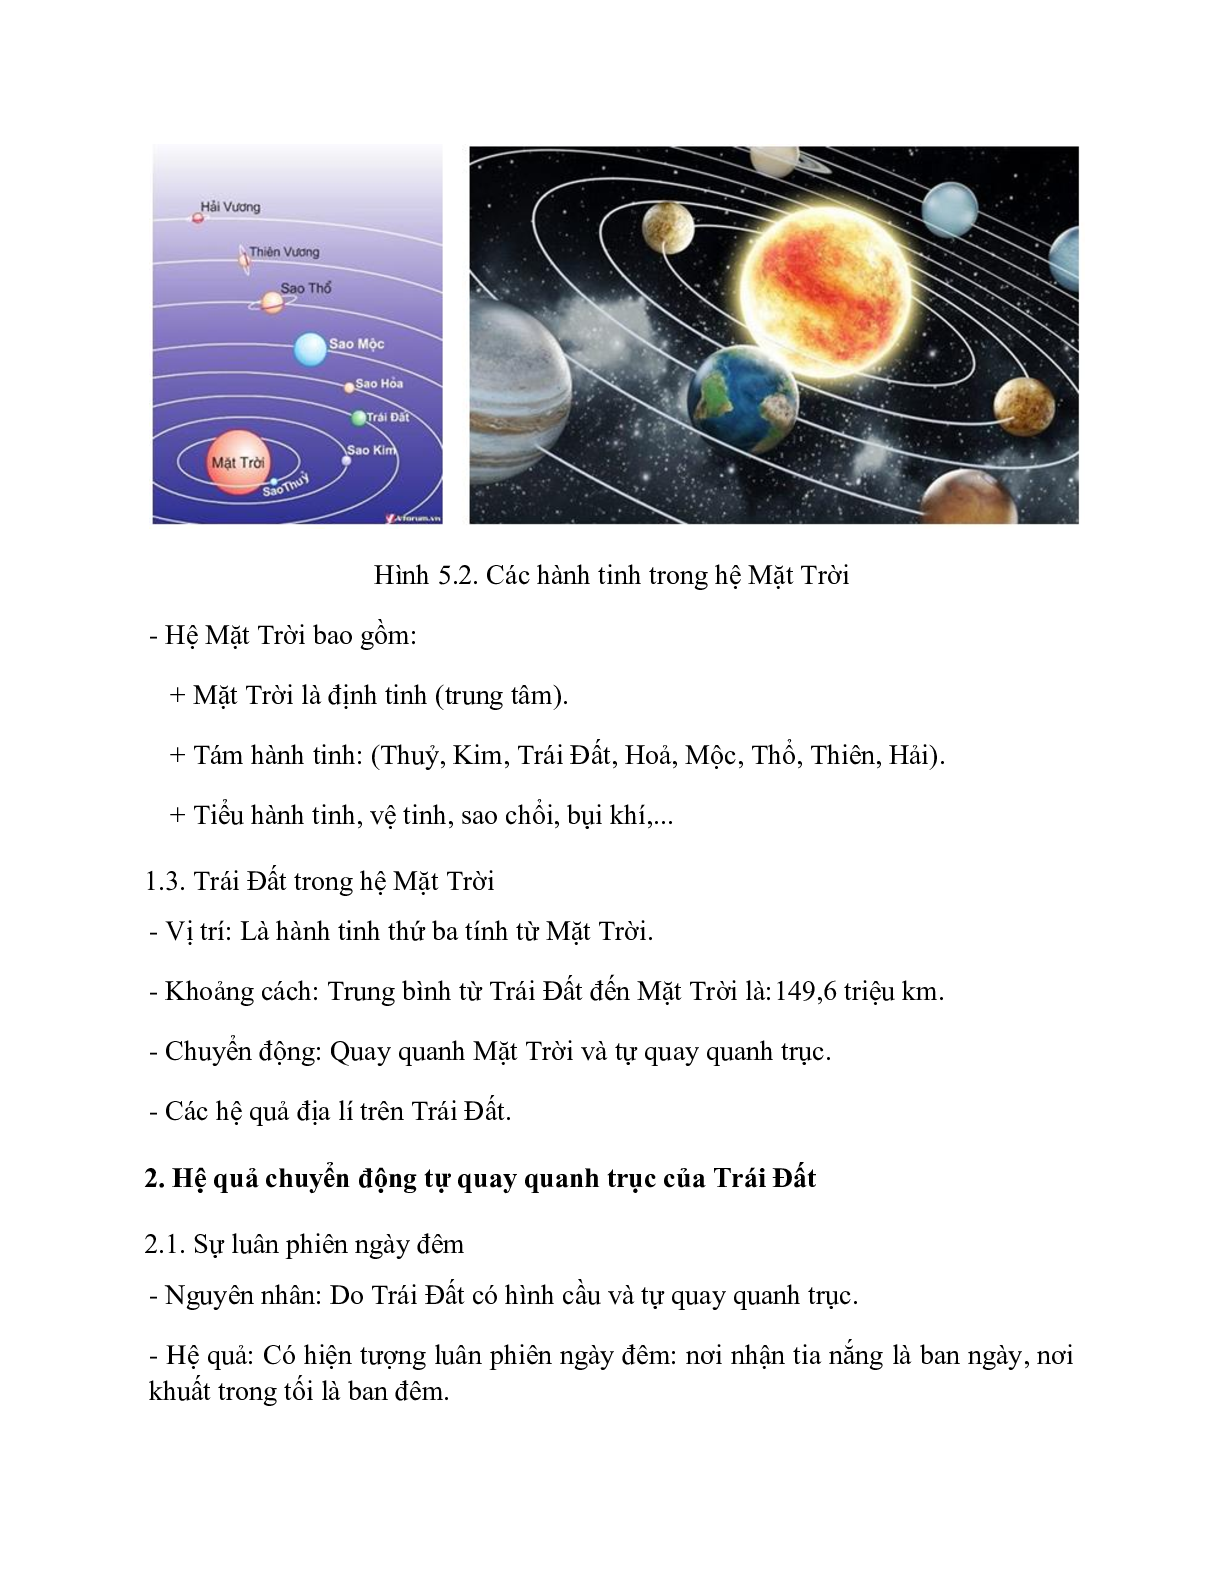 Địa Lí 10 Bài 5 (Lý thuyết và trắc nghiệm): Vũ Trụ. Hệ Mặt Trời và Trái Đất. Hệ quả của chuyển động tự quay quanh trục của Trái Đất (trang 2)